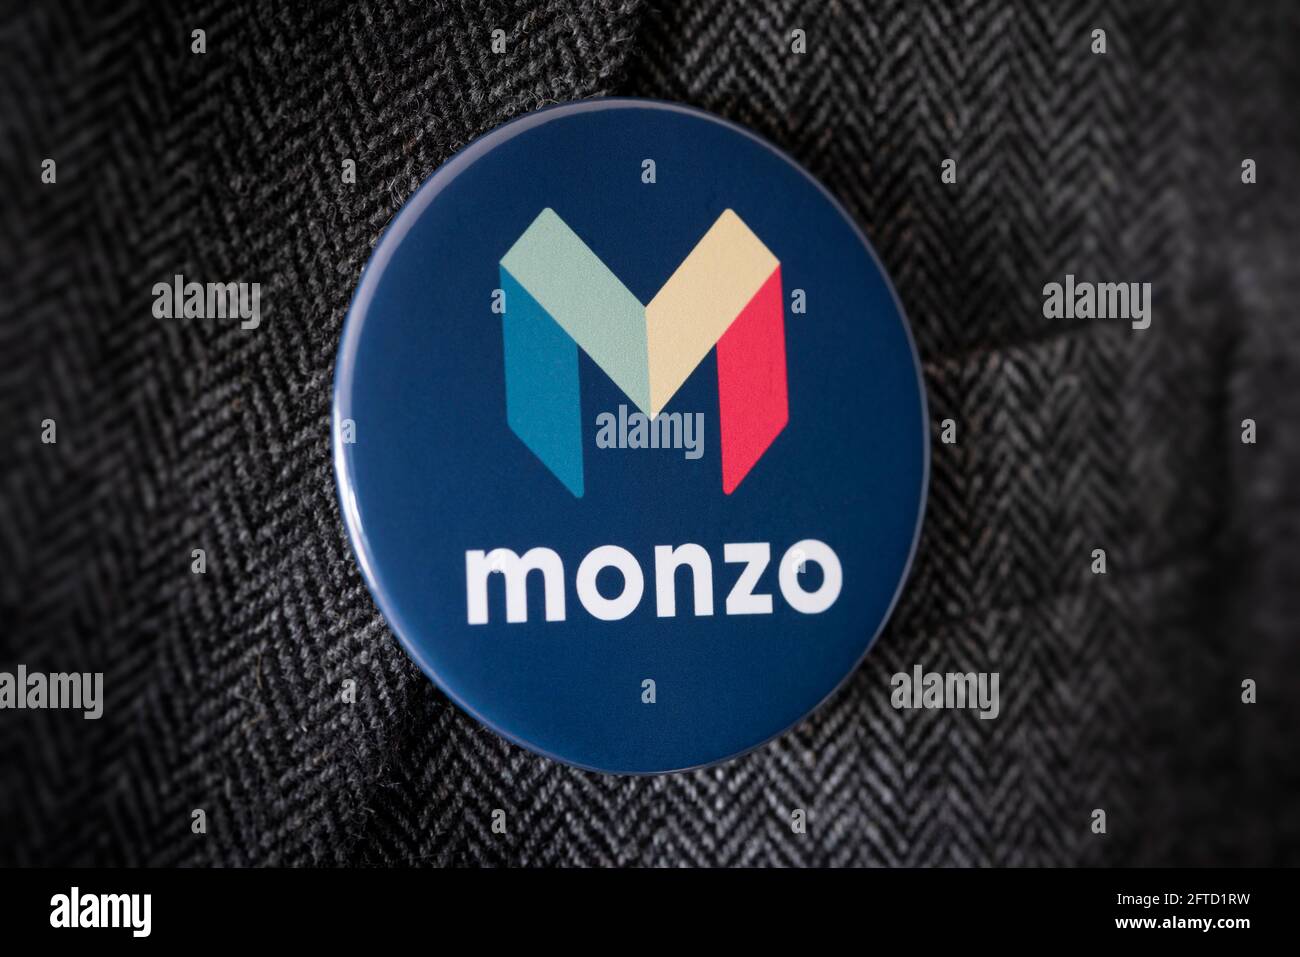 Una insignia de botón que lleva el logotipo de Monzo Bank atado a una chaqueta de traje. Foto de stock